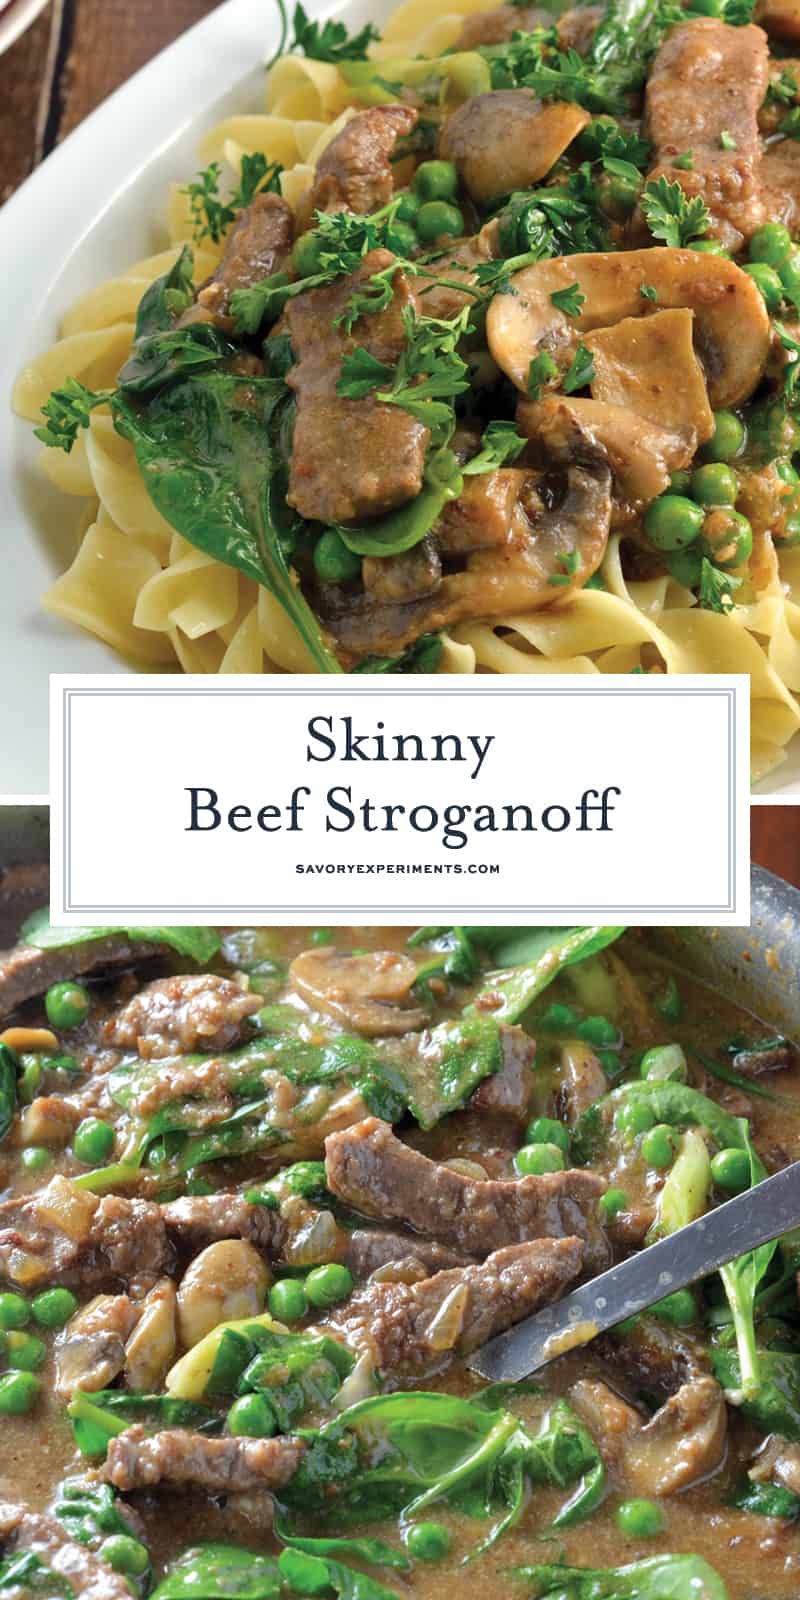 Skinny Beef Stroganoff gebruik een geheim ingrediënt om dit te maken in een lage calorie romige schotel. Voeg erwten en spinazie toe voor extra groenten! # beefstroganoff www.savoryexperiments.com 